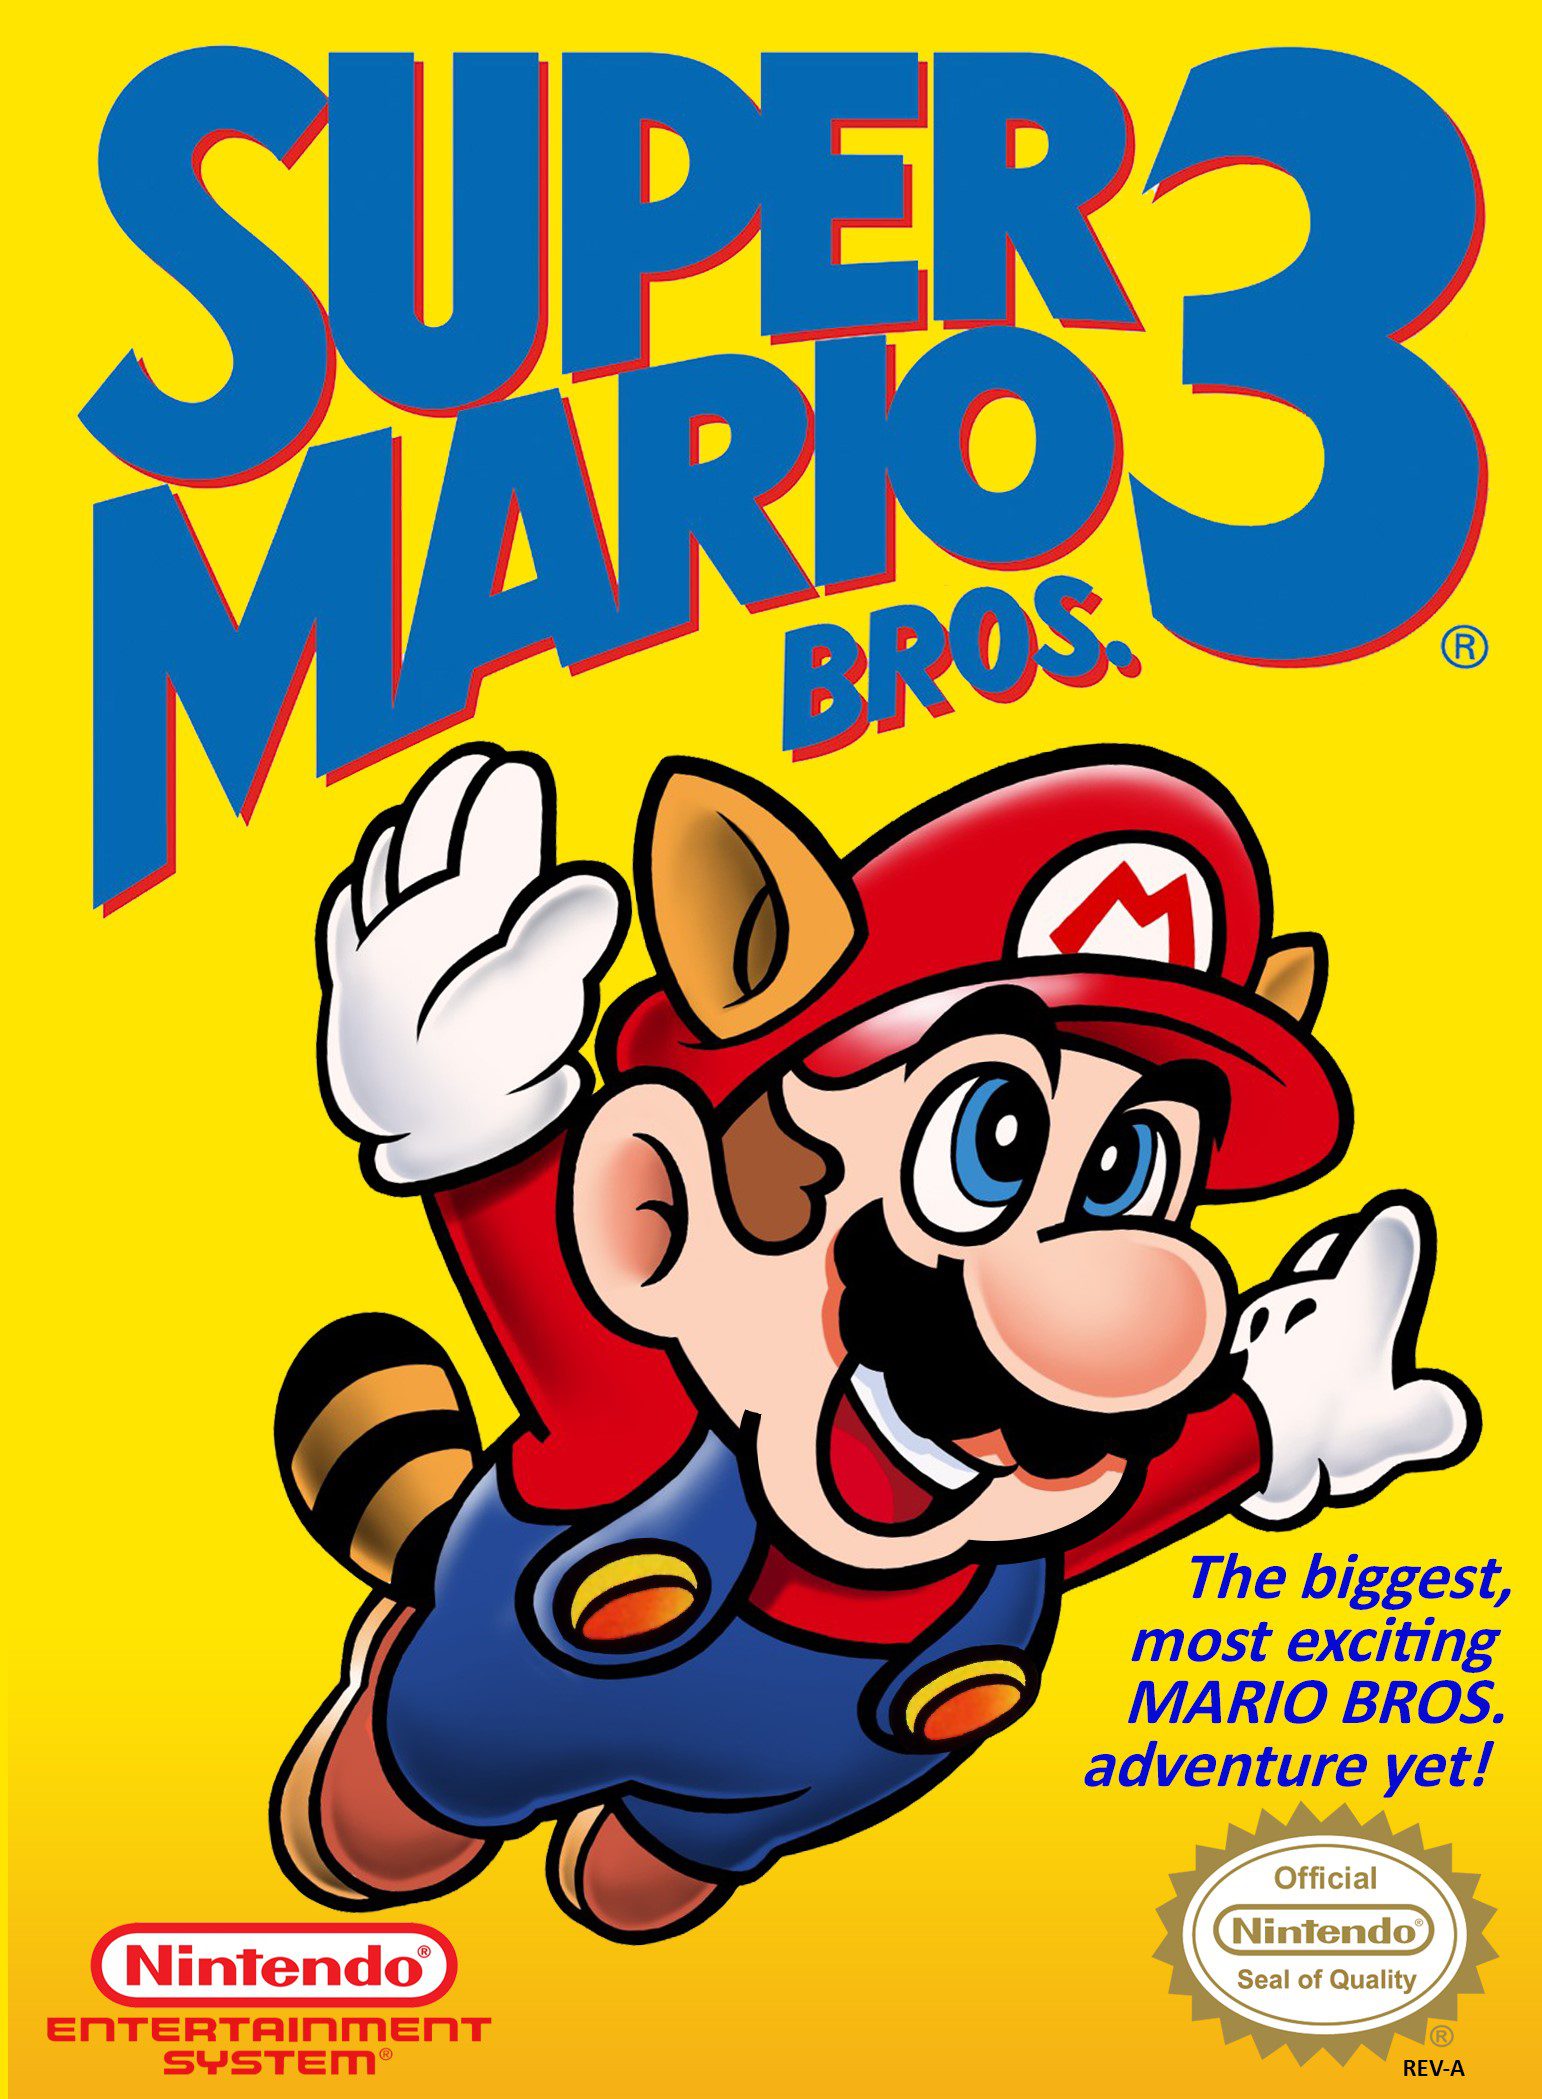 Super Mario Bros. 3 for Nintendo Entertainment System (NES)